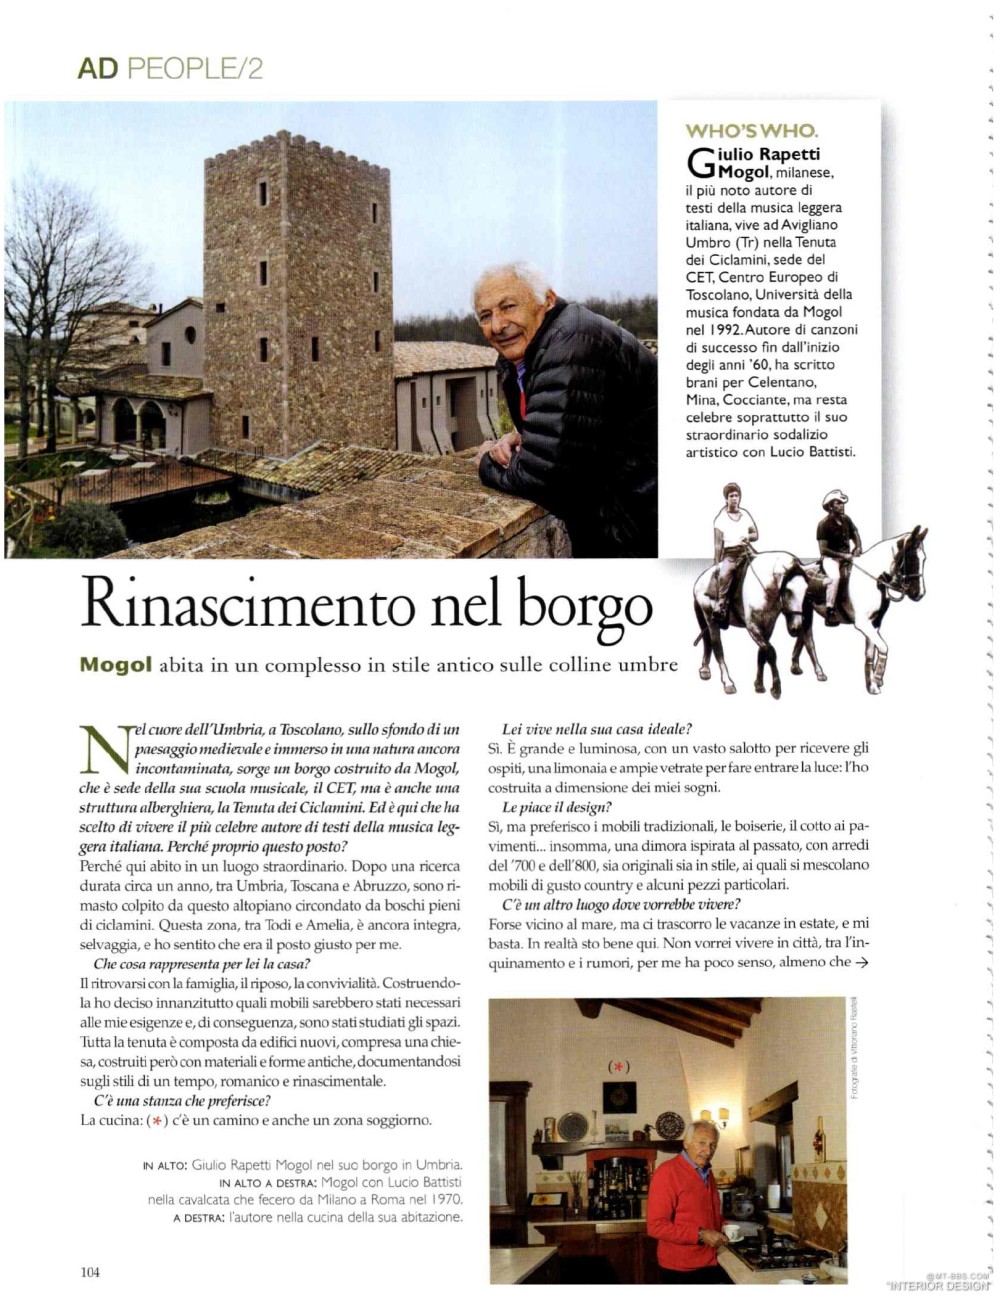 意大利AD 杂志 2012年全年JPG高清版本 全免（上传完毕）_0106.jpg